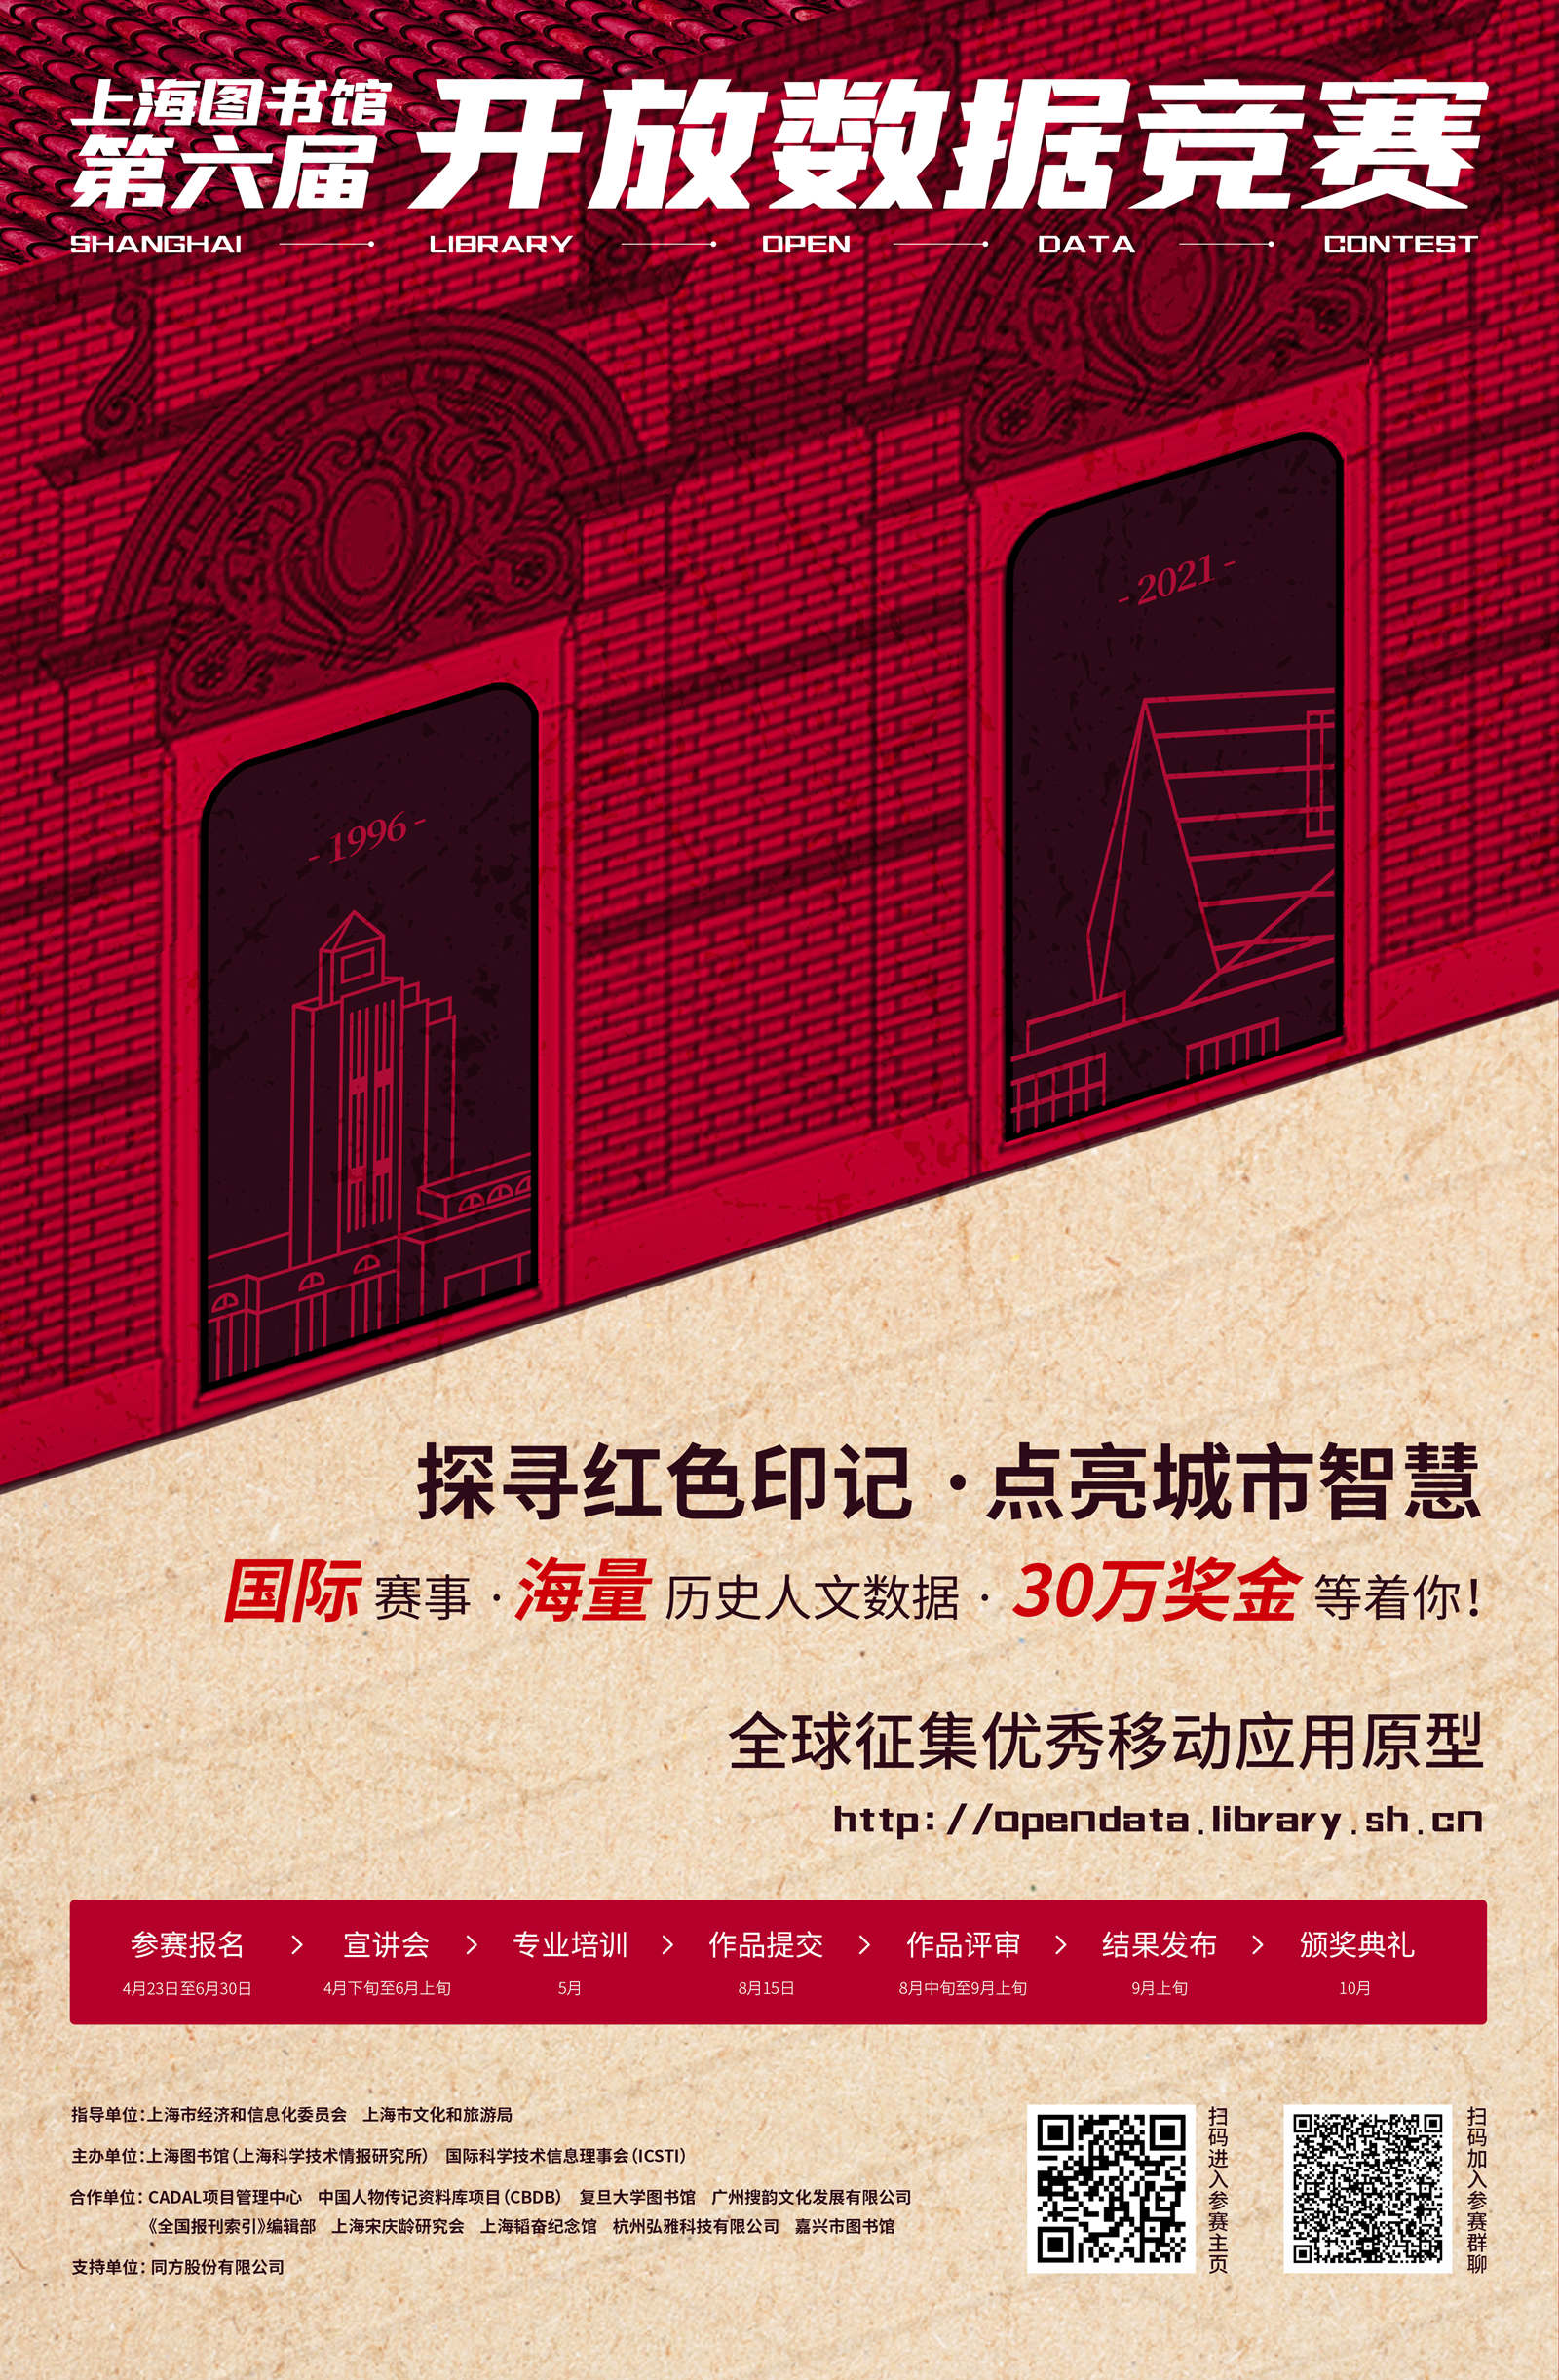 第六届上海图书馆开放数据竞赛